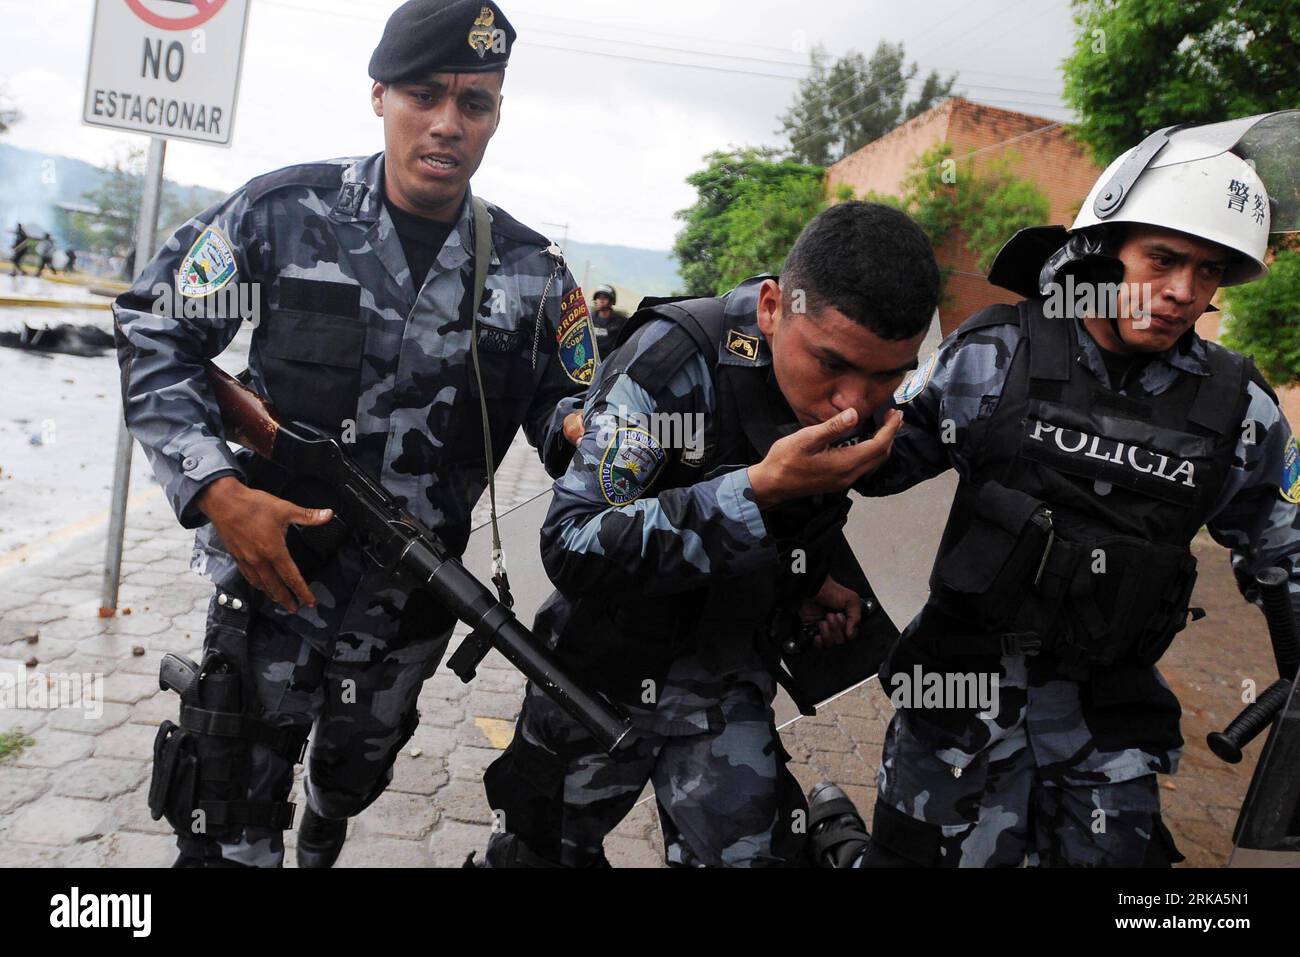 Bildnummer: 54275062 Datum: 03.08.2010 Copyright: imago/Xinhua Ein Polizeibeamter, Der bei Zusammenstößen mit Studenten verletzt wurde, wird am 3. August 2010 von seinen Kollegen in Tegucigalpa, der Hauptstadt von Honduras, begleitet. Die Studenten der Nationalen Autonomen Universität Honduras (UNAH, für ihre Initialen auf Spanisch) forderten die Wiedereinstellung von mehr als 100 Arbeitnehmern, die der Gewerkschaft UNAH angegliedert waren und entlassen wurden. (Xinhua/Rafael Ochoa) (zl) HONDURAS-TEGUCIGALPA-ARBEITSSTREITKOLLISIONEN PUBLICATIONxNOTxINxCHN Politik Ausschreitungen Demo Protest Studenten Polizei Premiere xint kbdig xng 2010 quer o0 Stockfoto